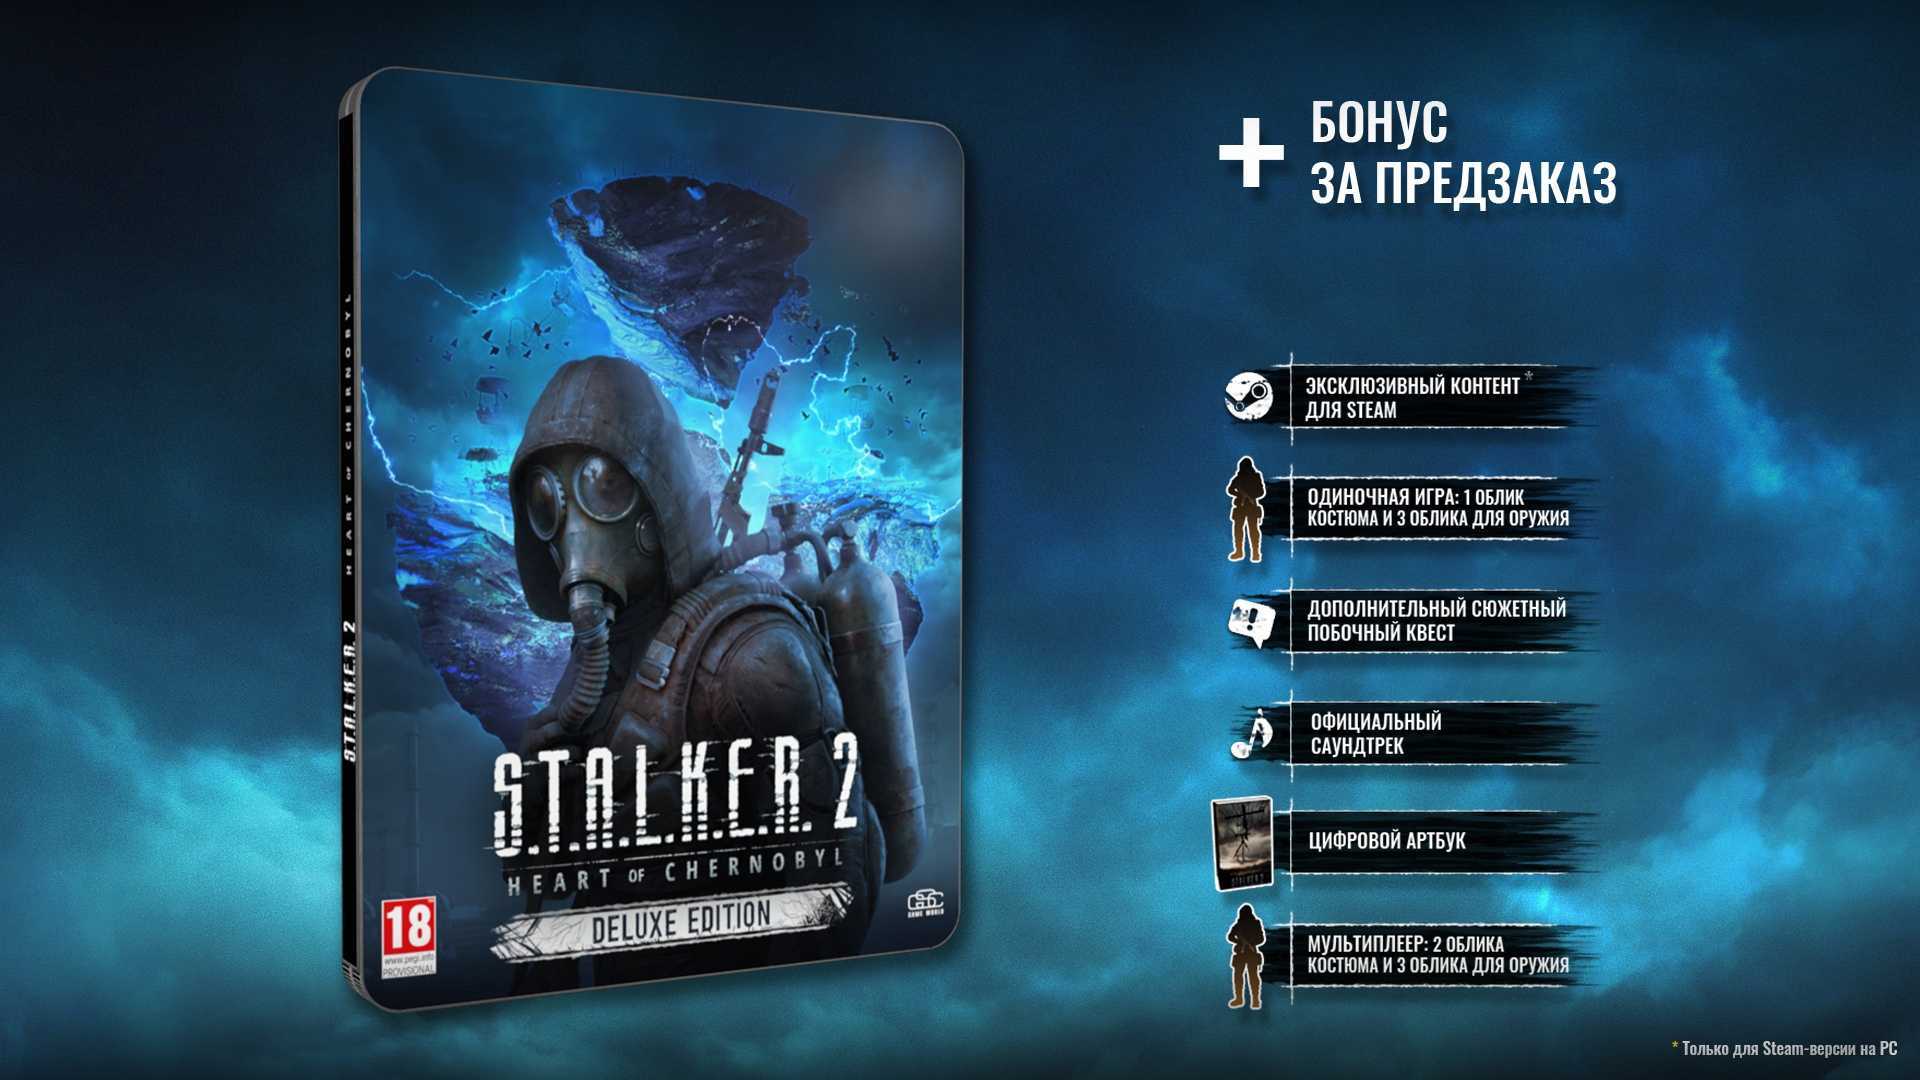 Сталкер 2: дата выхода игры когда выйдет в россии